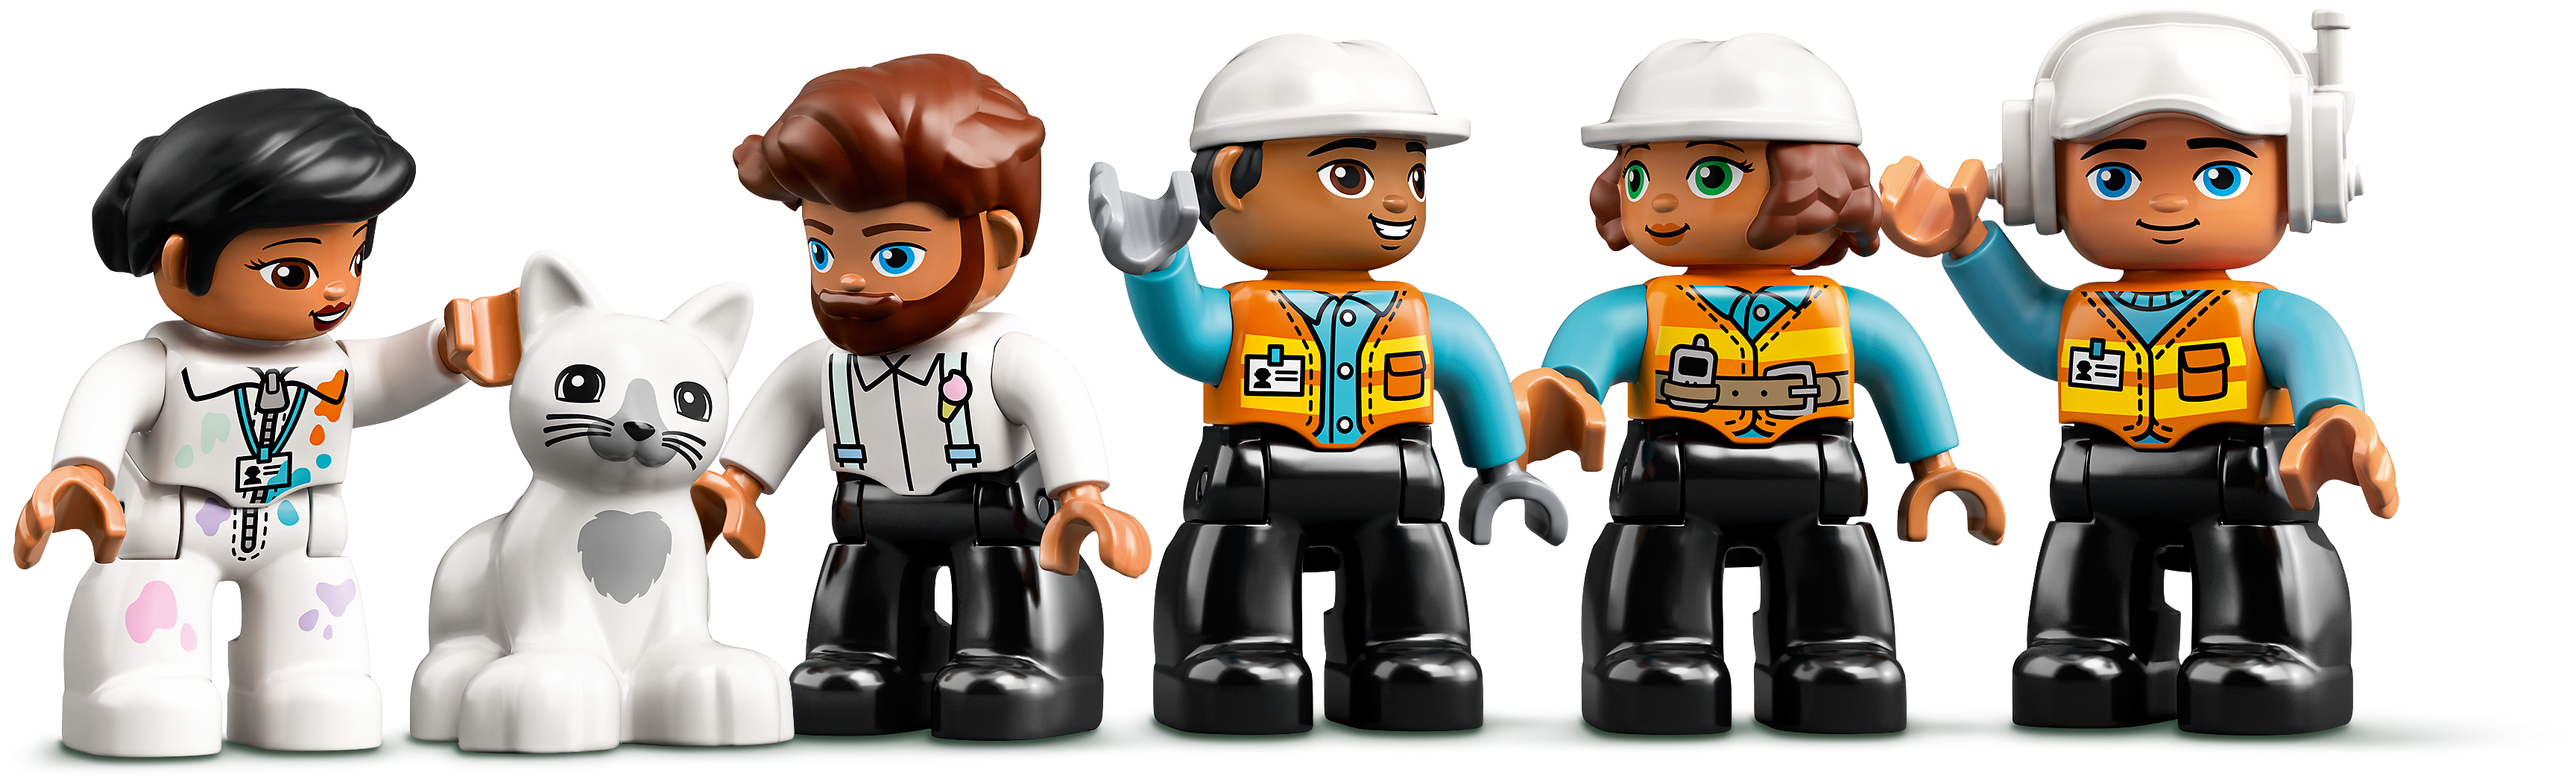 Конструктор LEGO Башенный кран на стройке DUPLO 10933 заказать